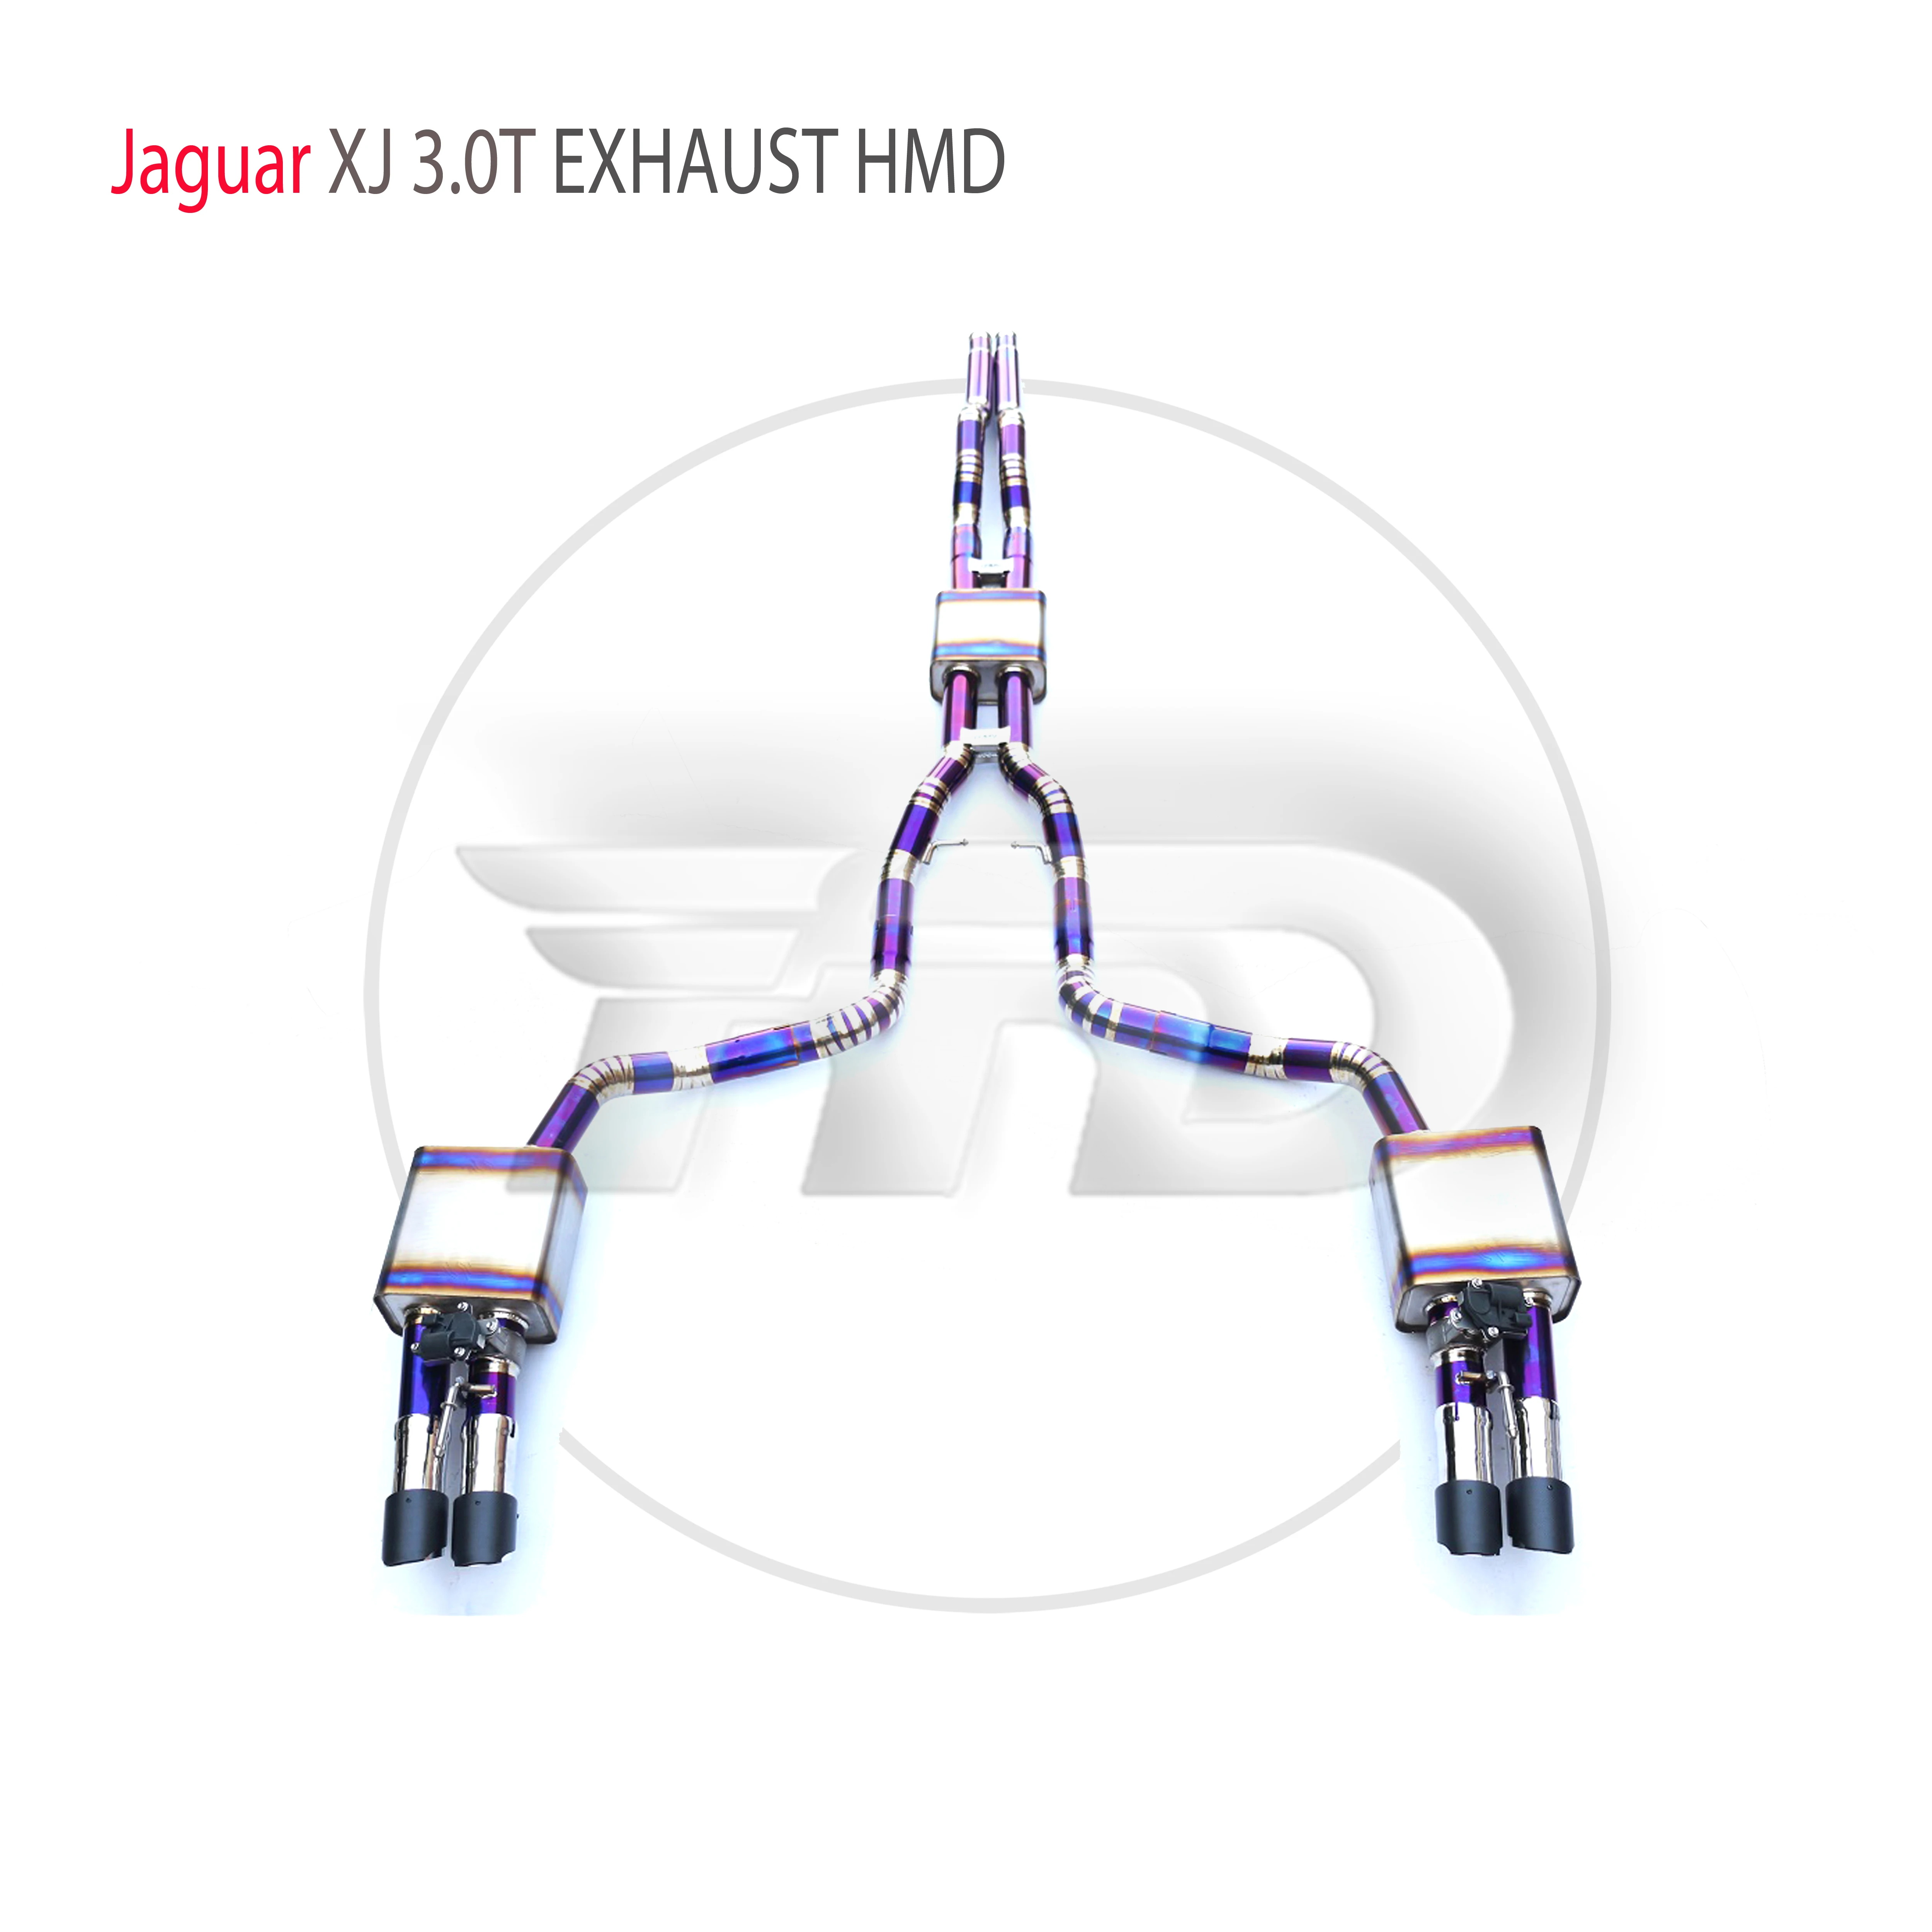 

HMD Titanium Alloy Exhaust System Performance Catback is Suitable For Jaguar XJ 3.0T Auto Modify Electronic Valve